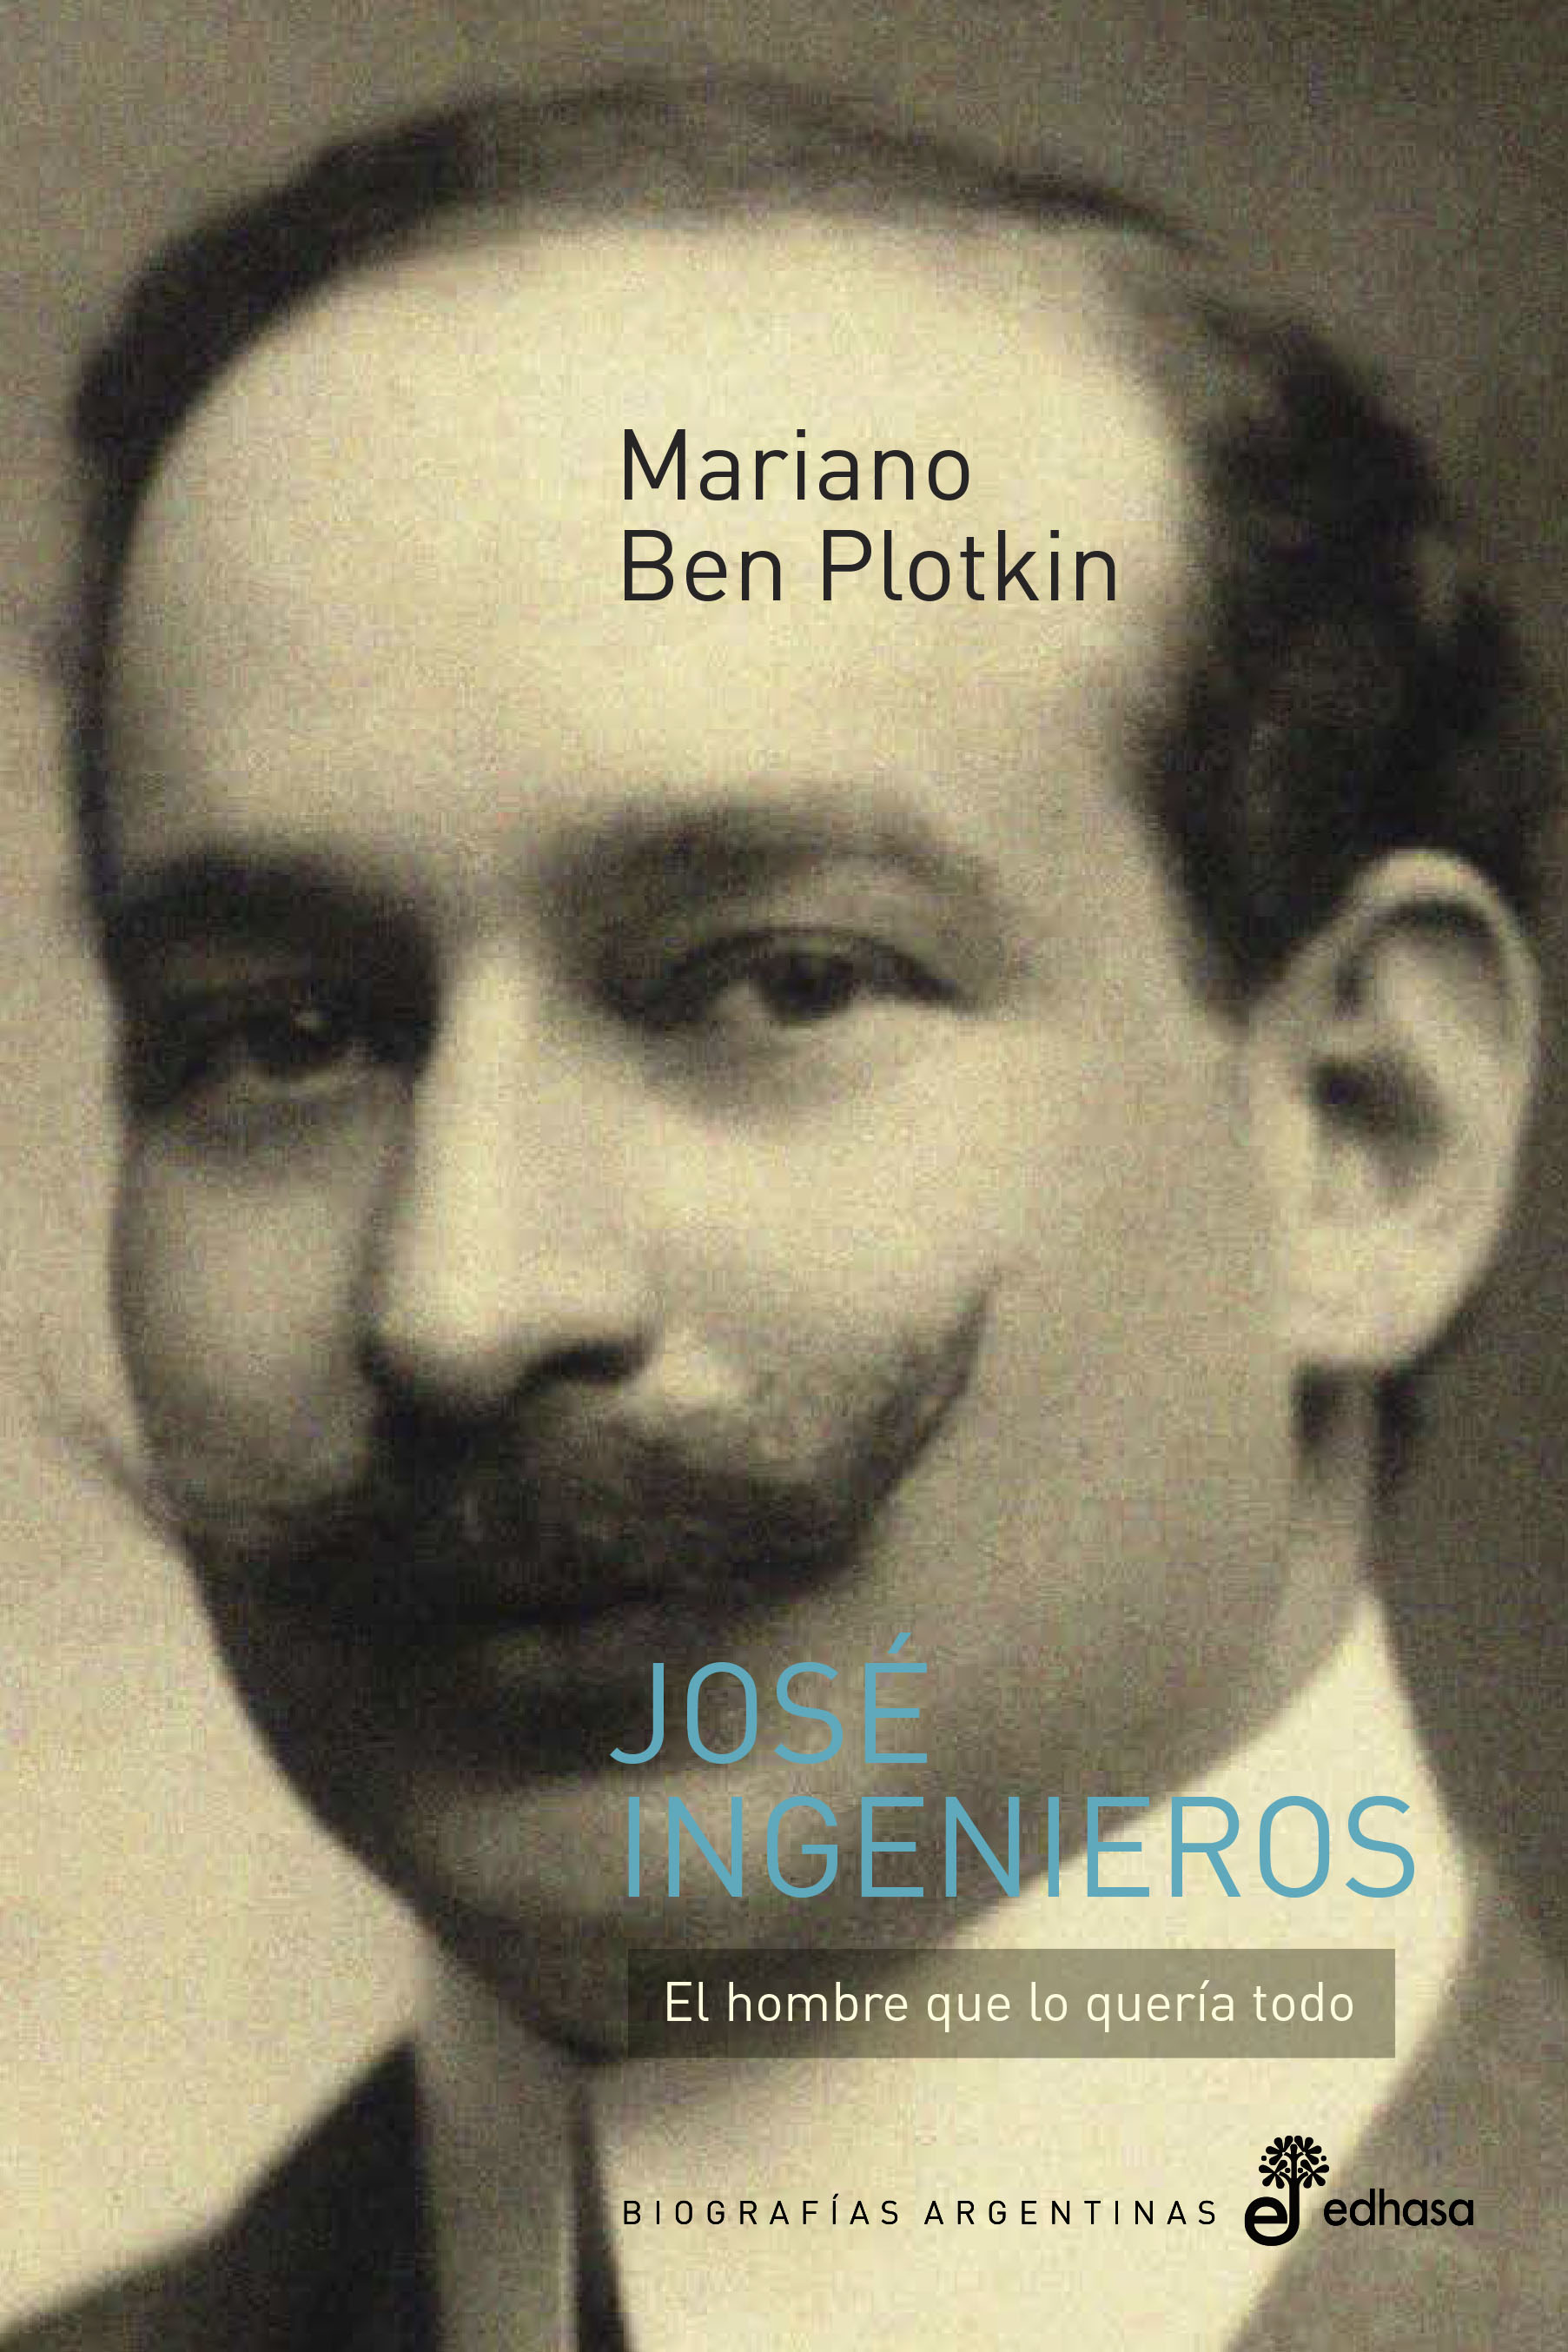 Mariano Ben Plotkin: «Este no es Ingenieros, sino uno de los Ingenieros posibles»